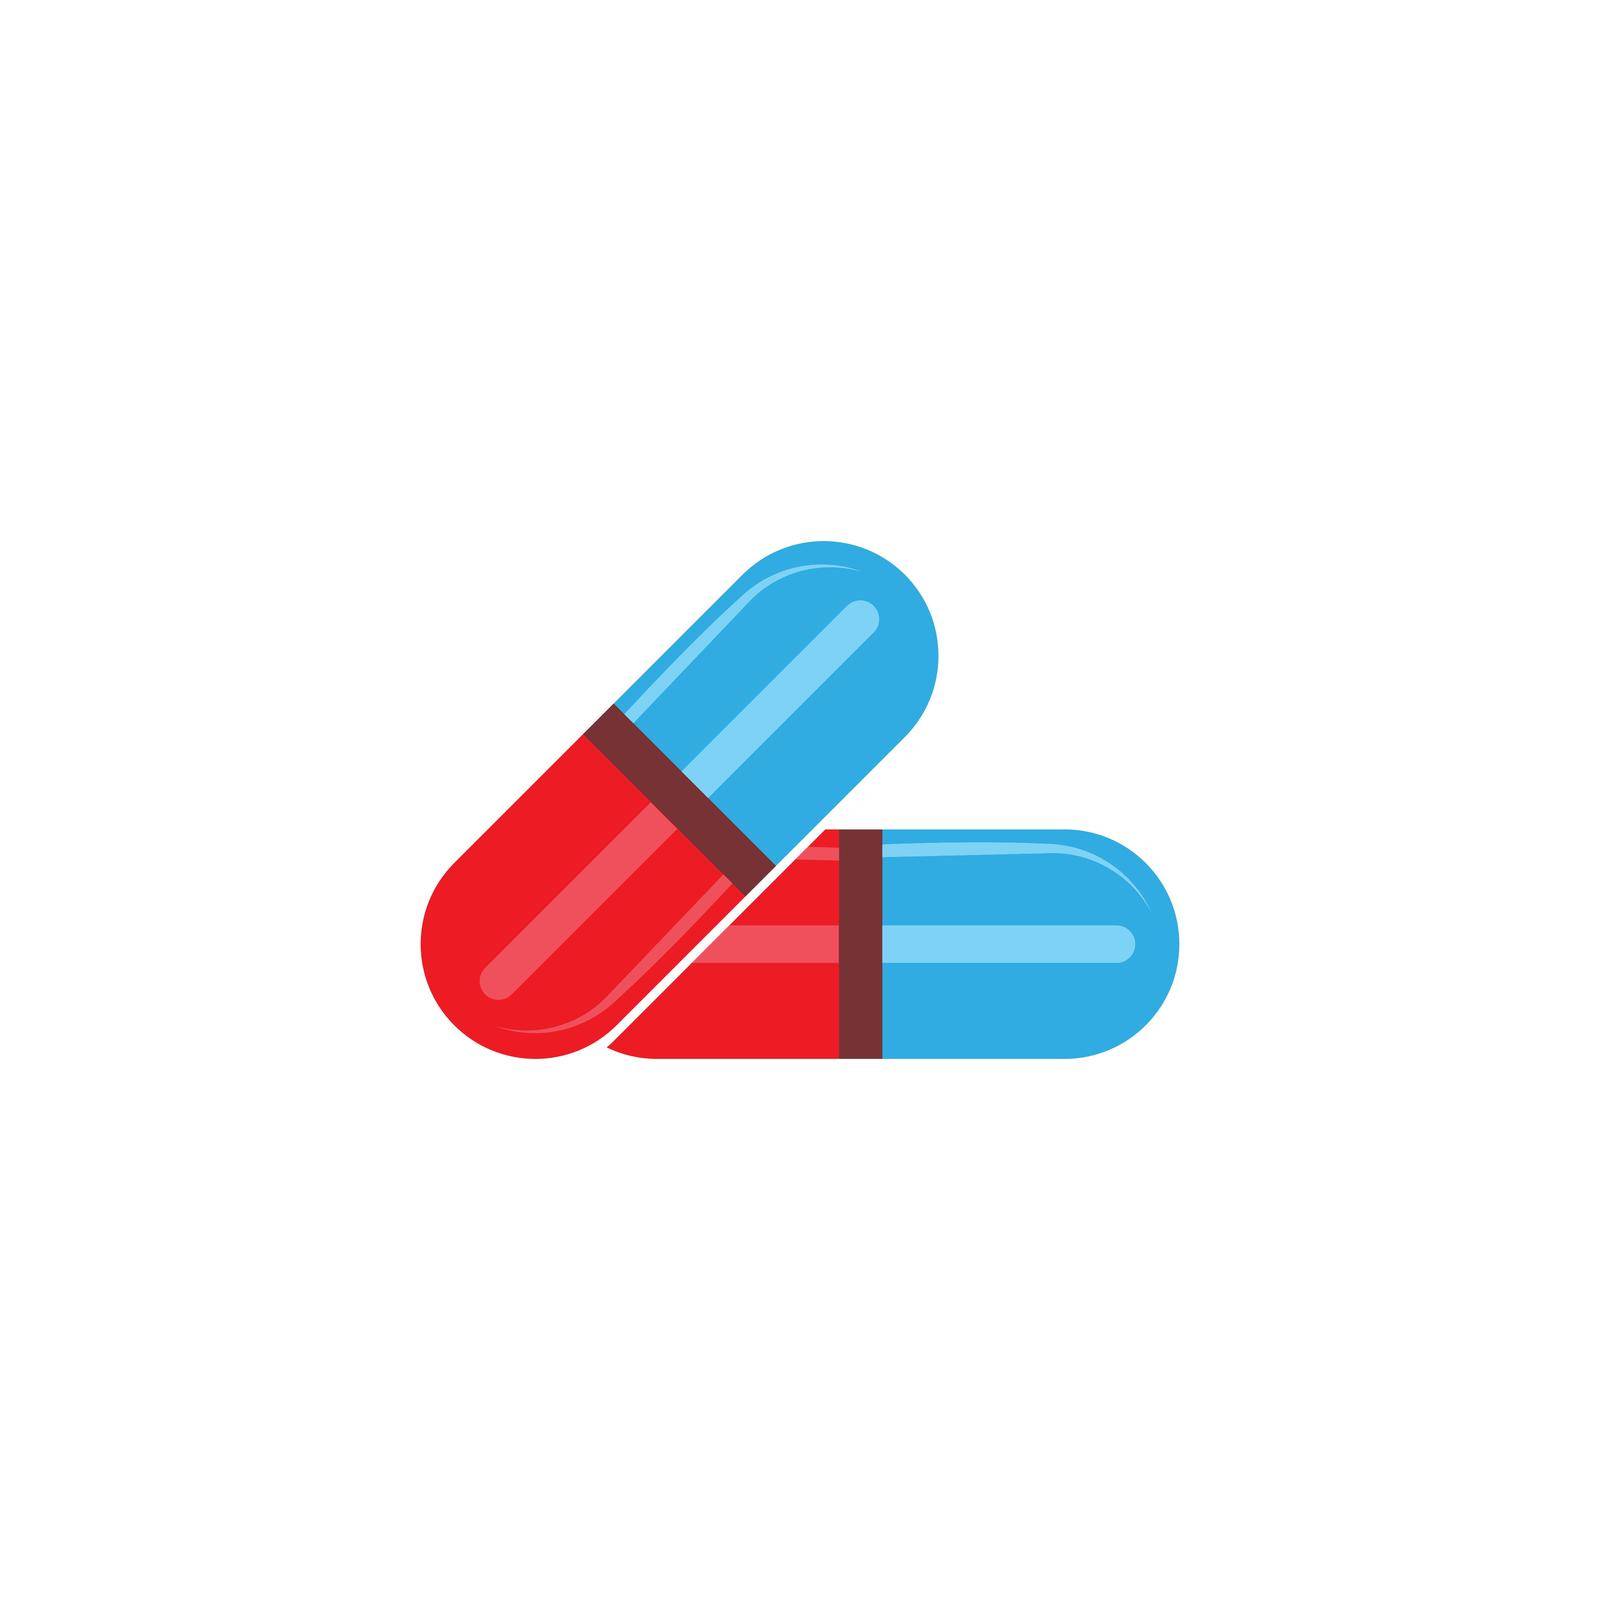 Pill illustration medical logo flat design